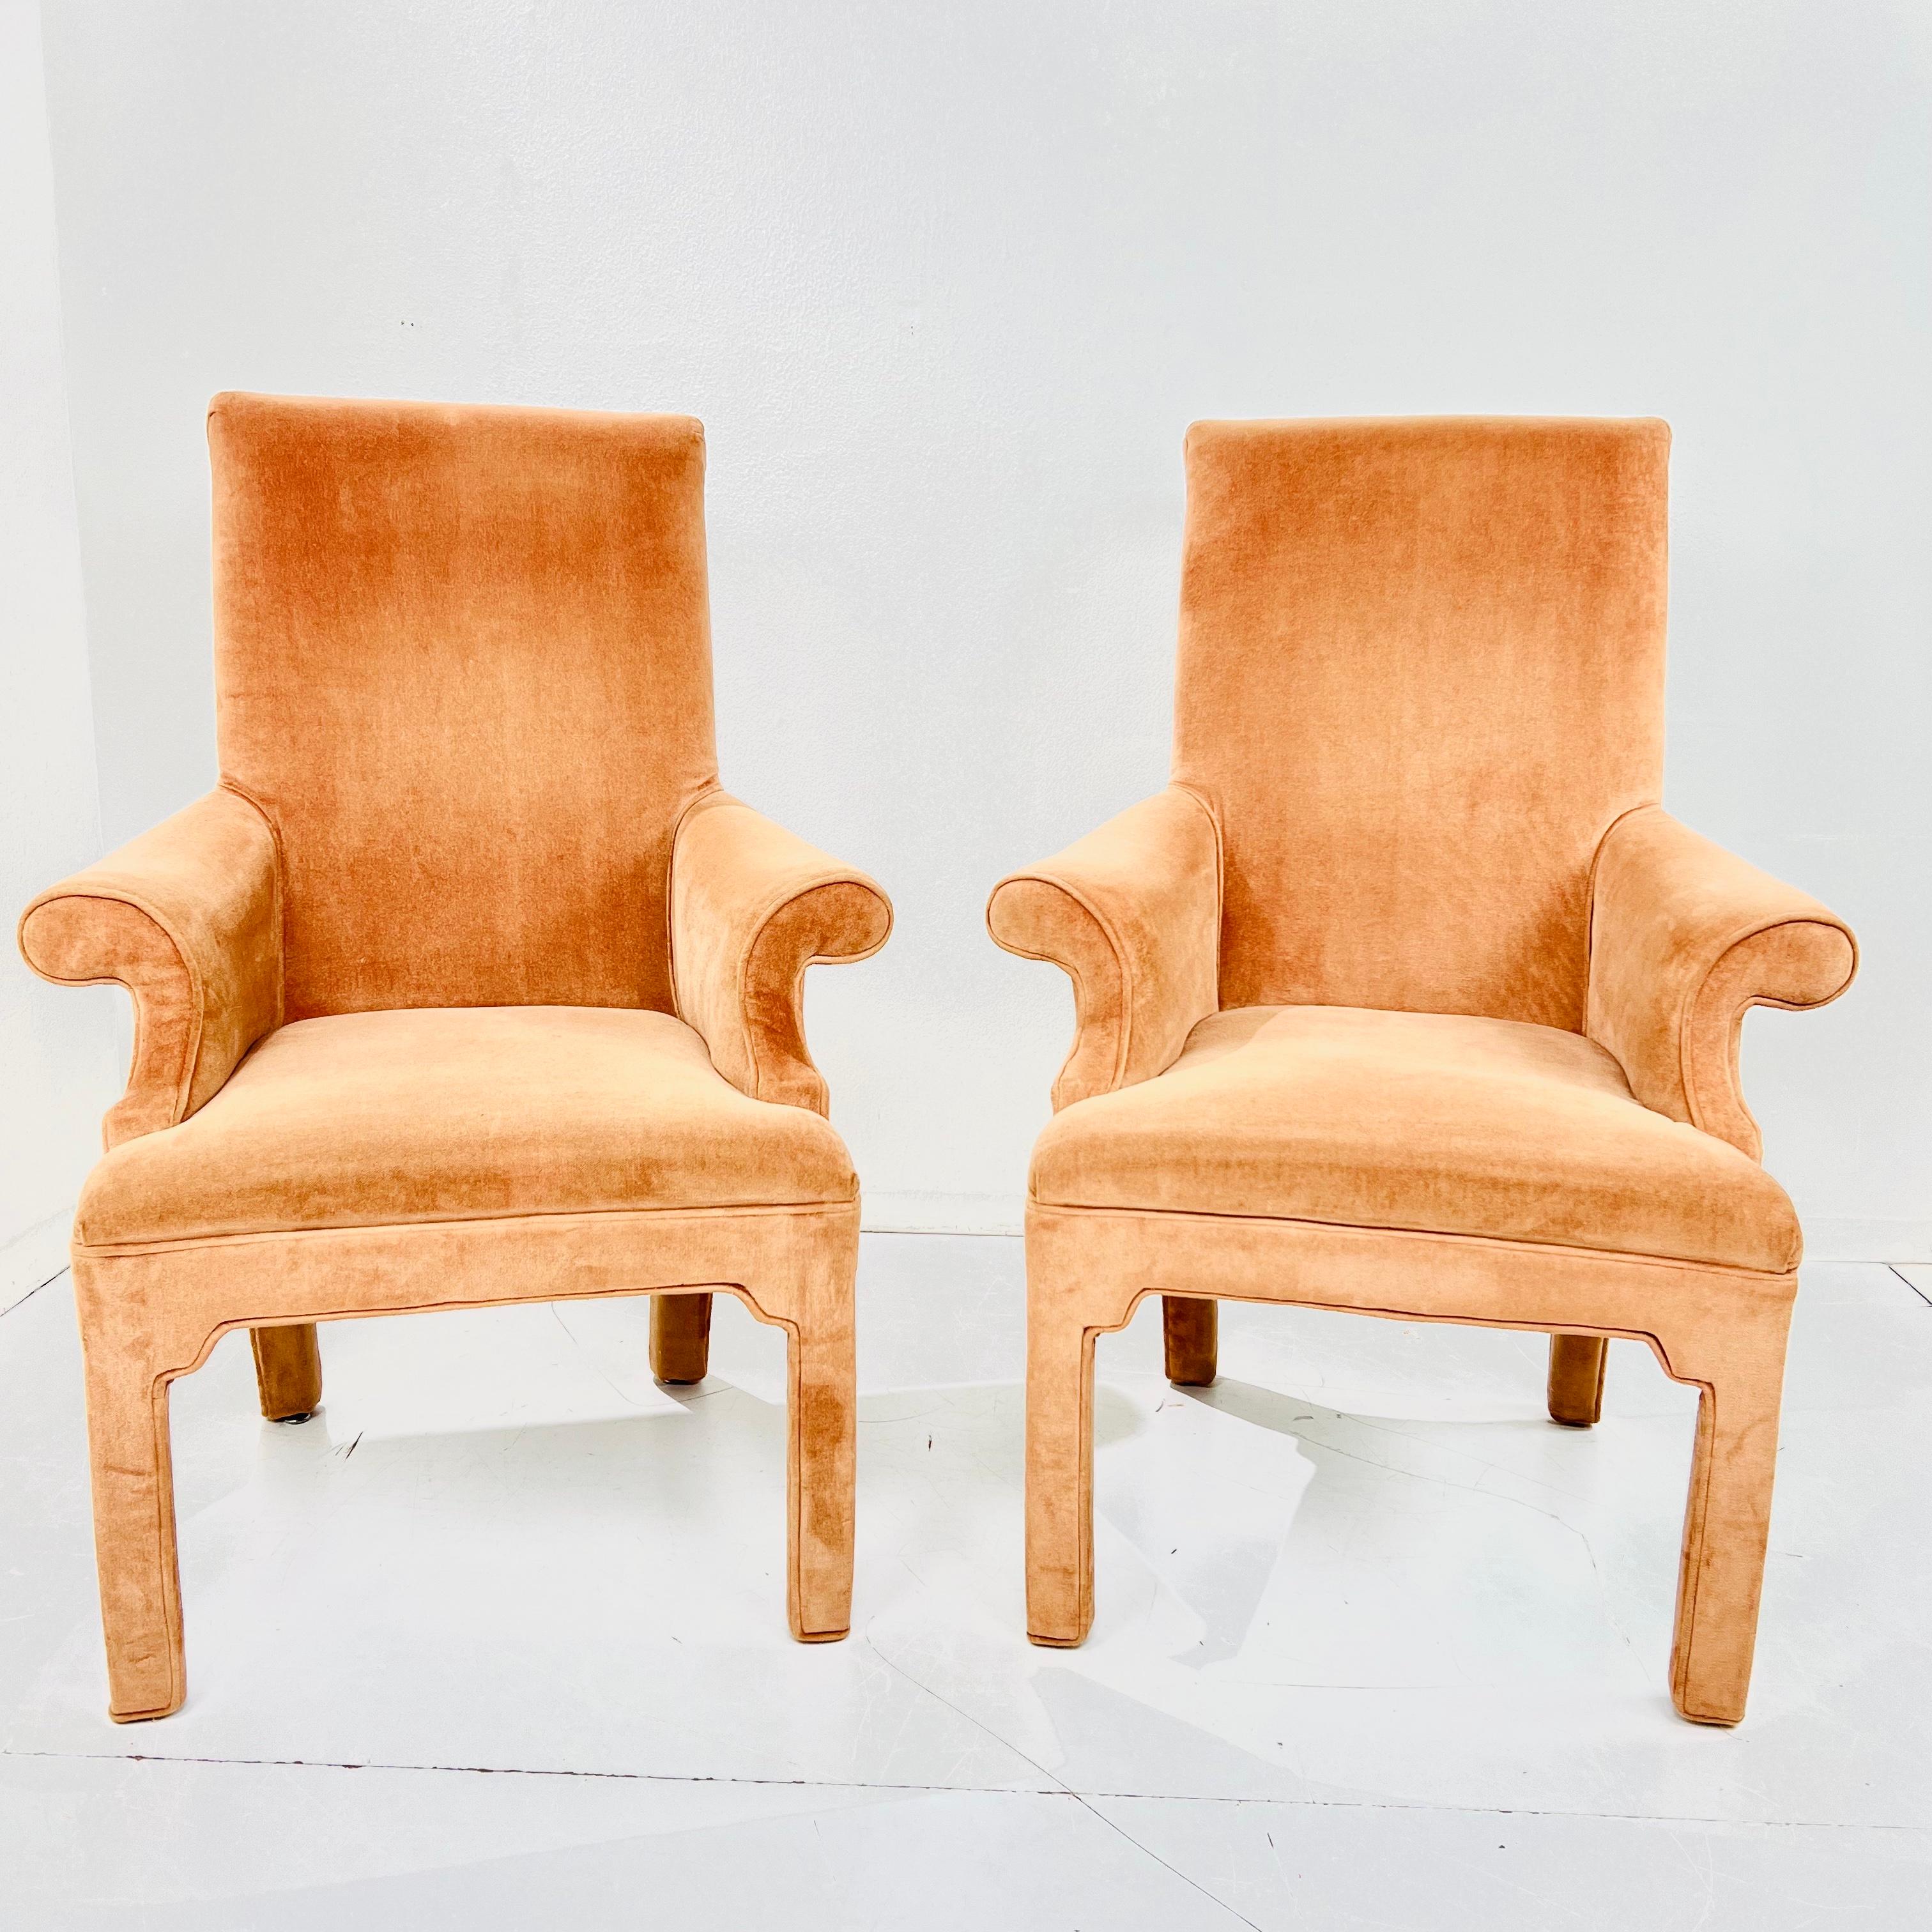 Paire de fauteuils postmodernes sophistiqués dans le style de Milo Baughman. Le design/One à enroulement ajoute de l'élégance, du flair et du mouvement aux lignes simples des Parsons. 
Les sièges des tabourets sont rembourrés et confortables. Bon